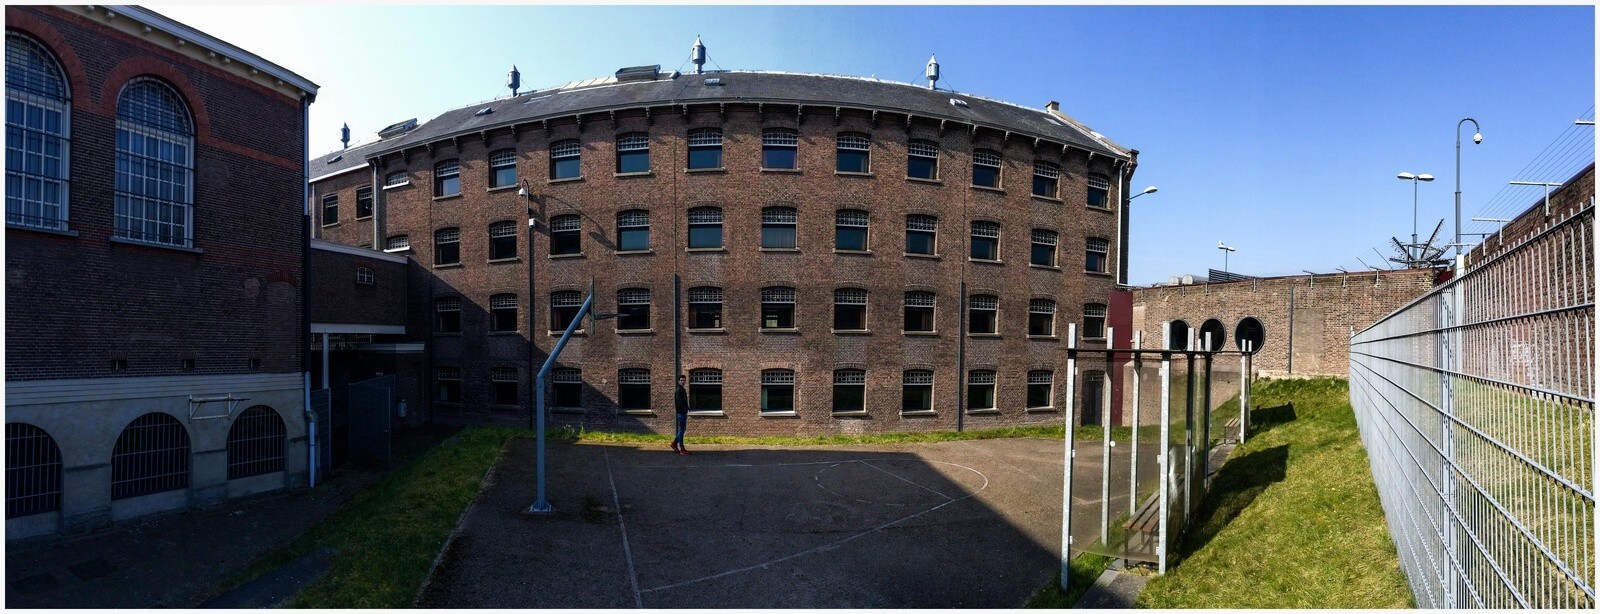 Het voormalige huis van bewaring Wolvenplein. Foto: Michael Kooren